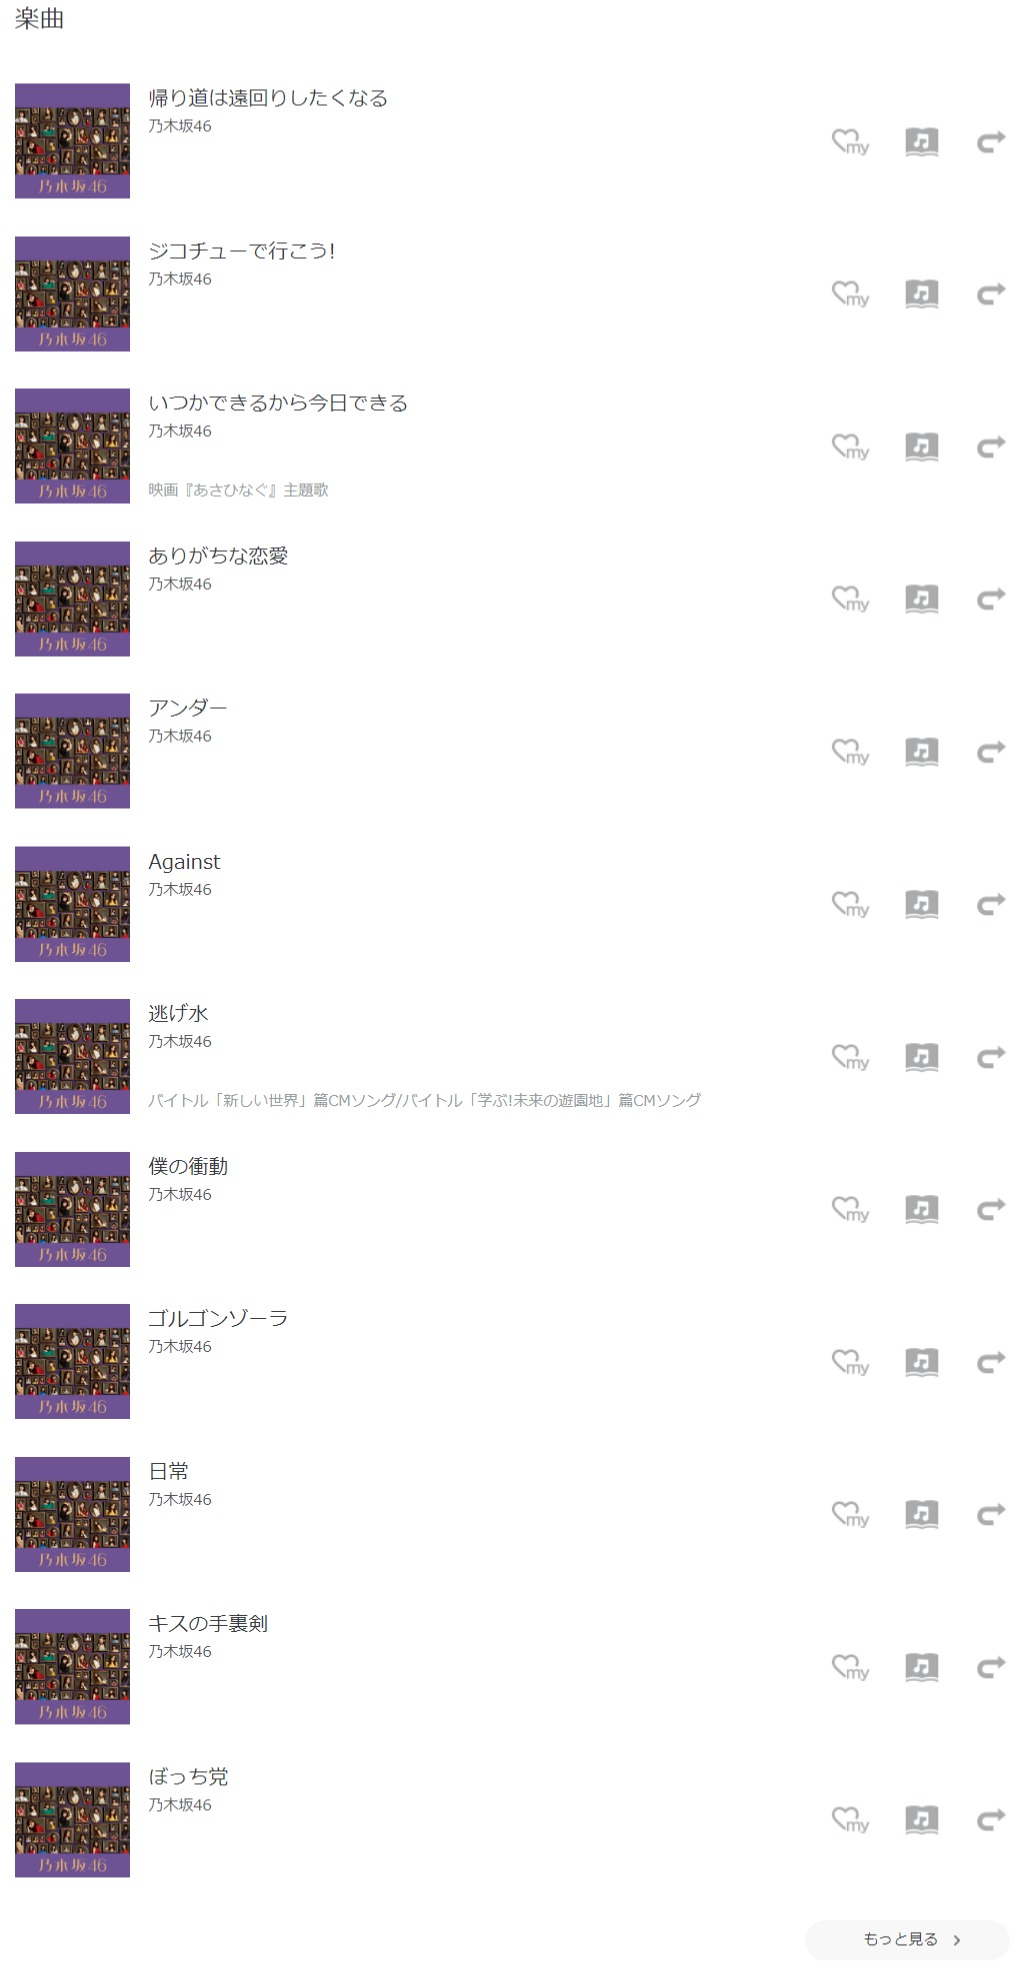 乃木坂46 今が思い出になるまで アルバム曲をmp3でダウンロードしてフル視聴する方法 音楽の森